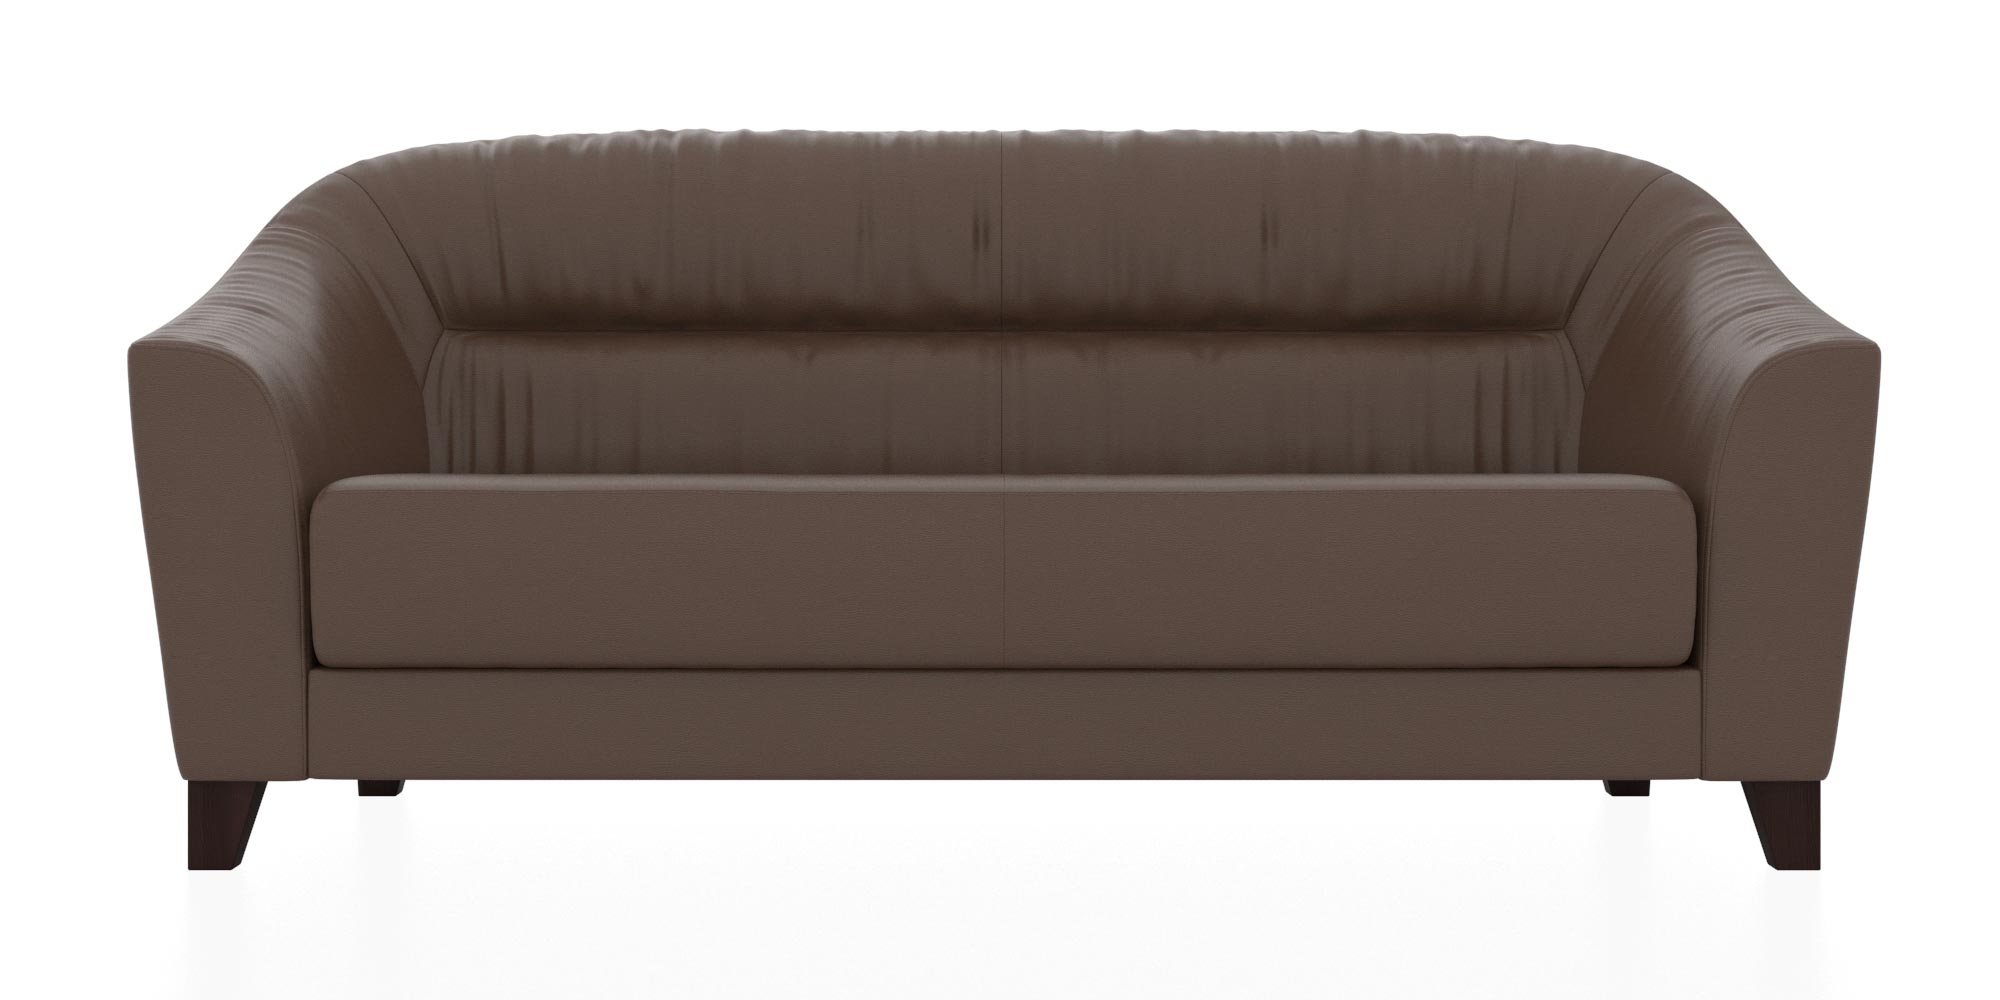 Трехместный диван с обивкой из кожзама. Цвет коричневый (euroline 994)